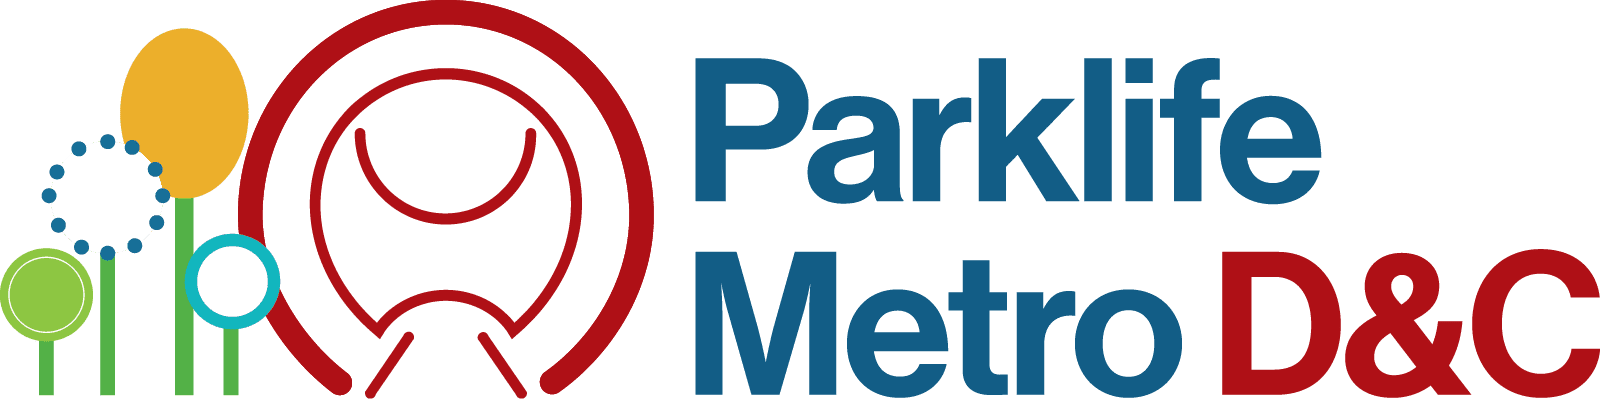 Parklife Metro Logo